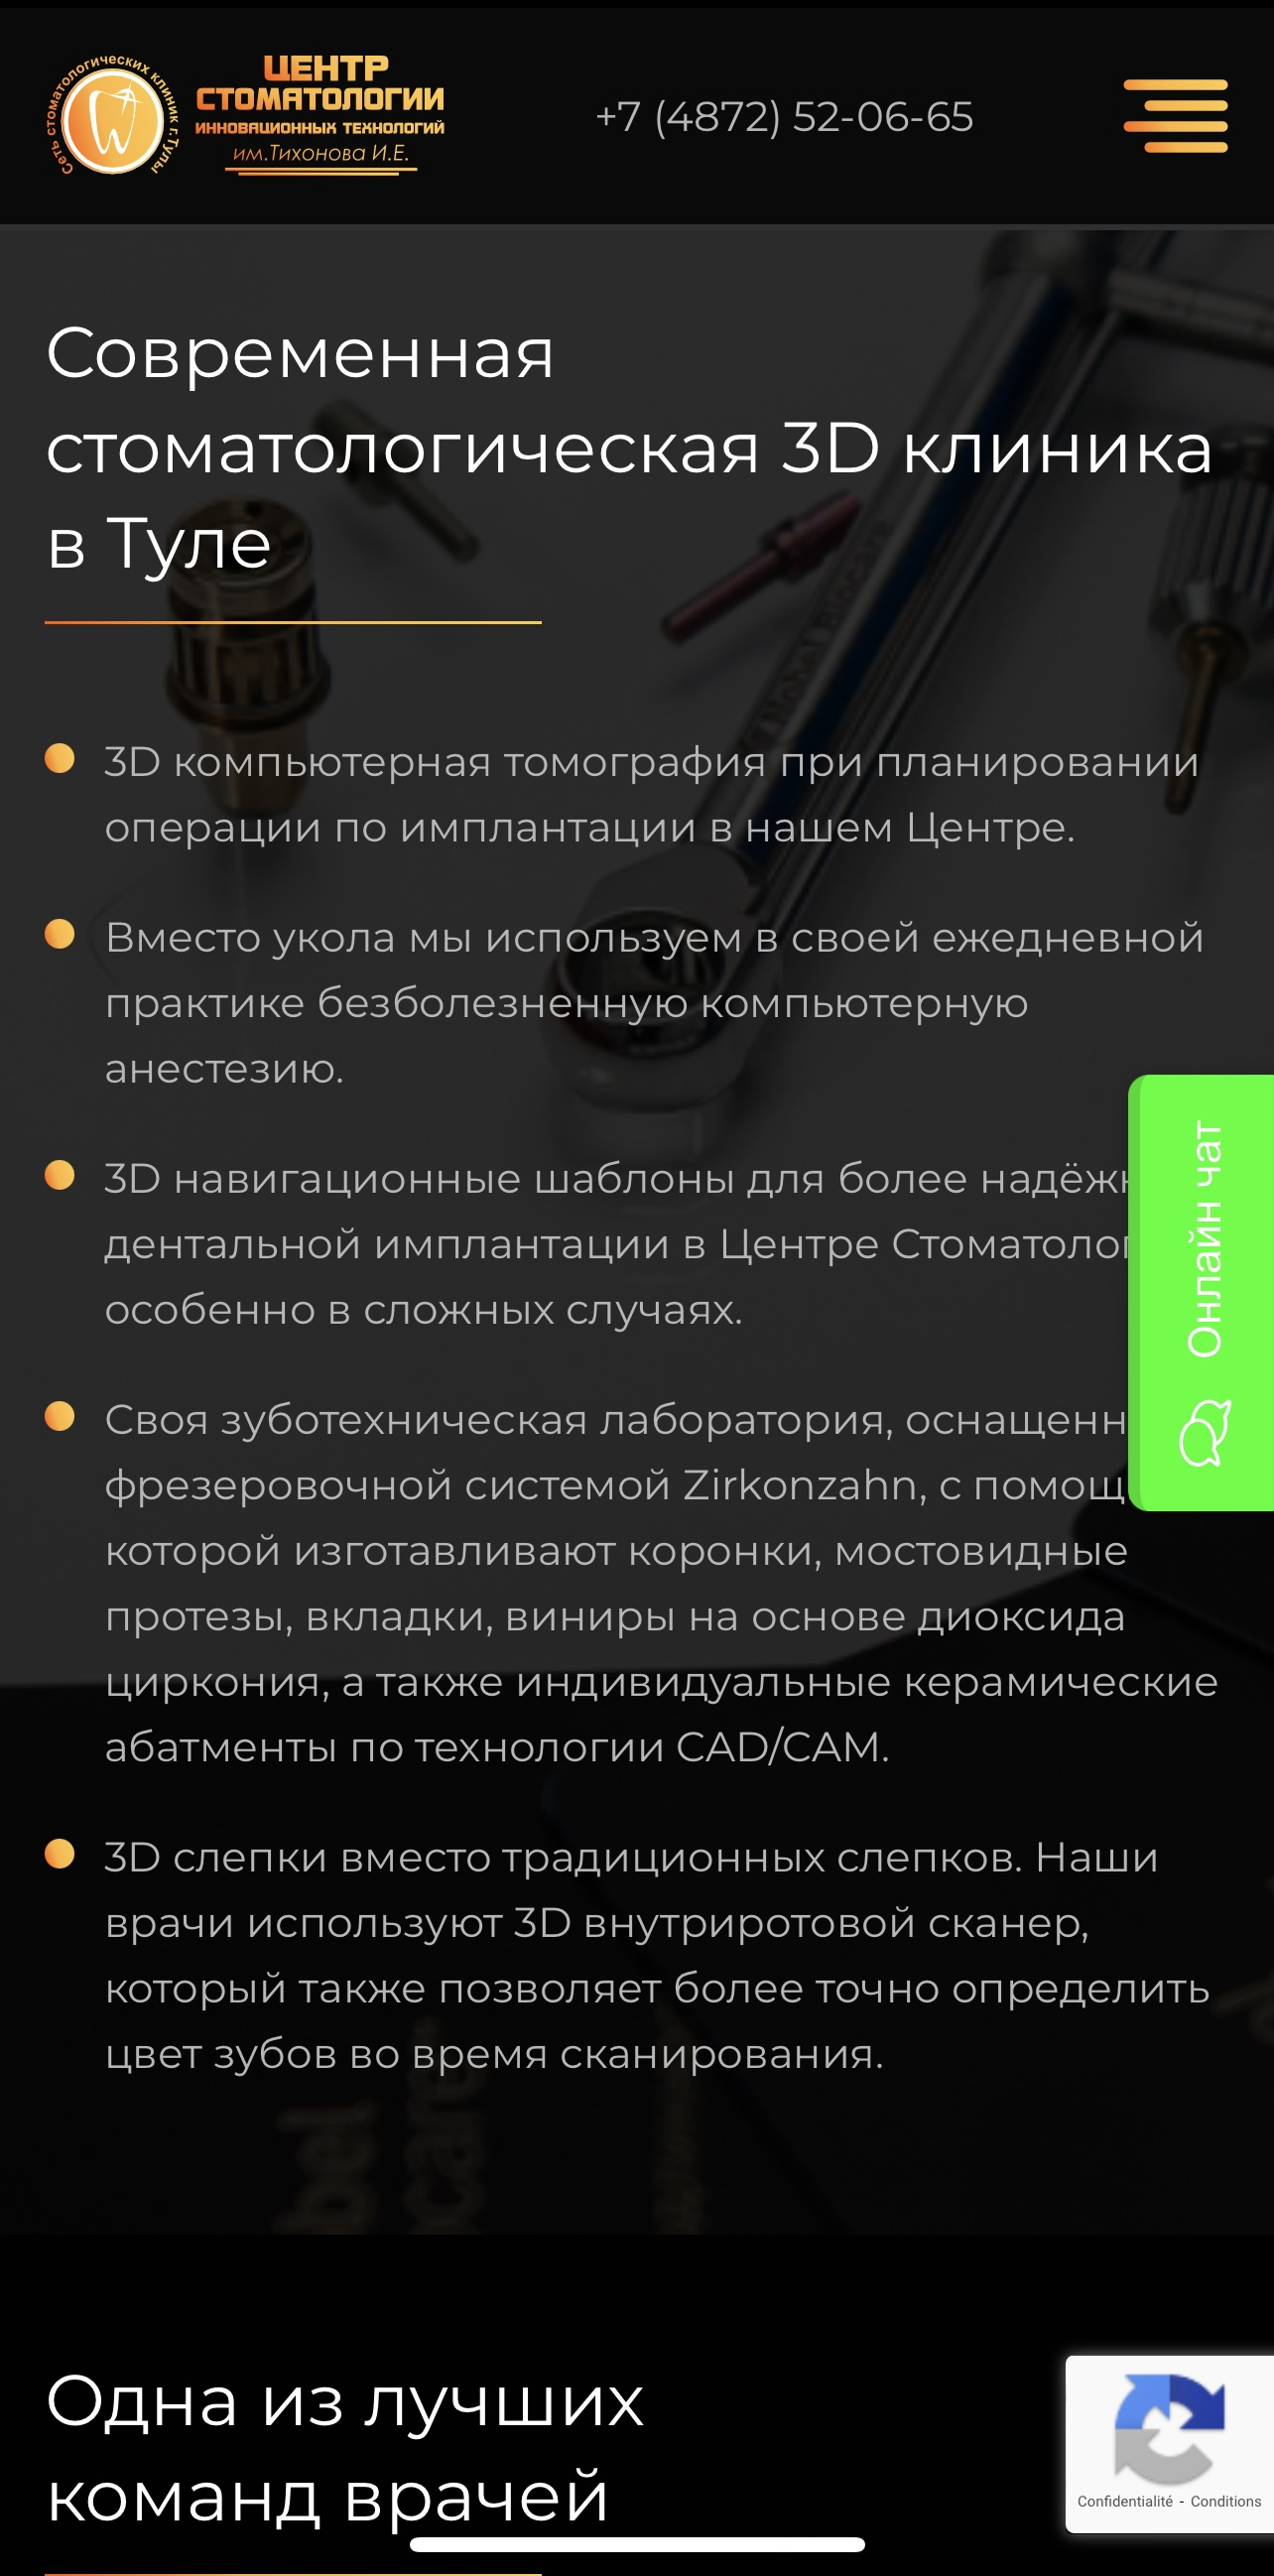 implantnobel.tuladent.ru / О клинике